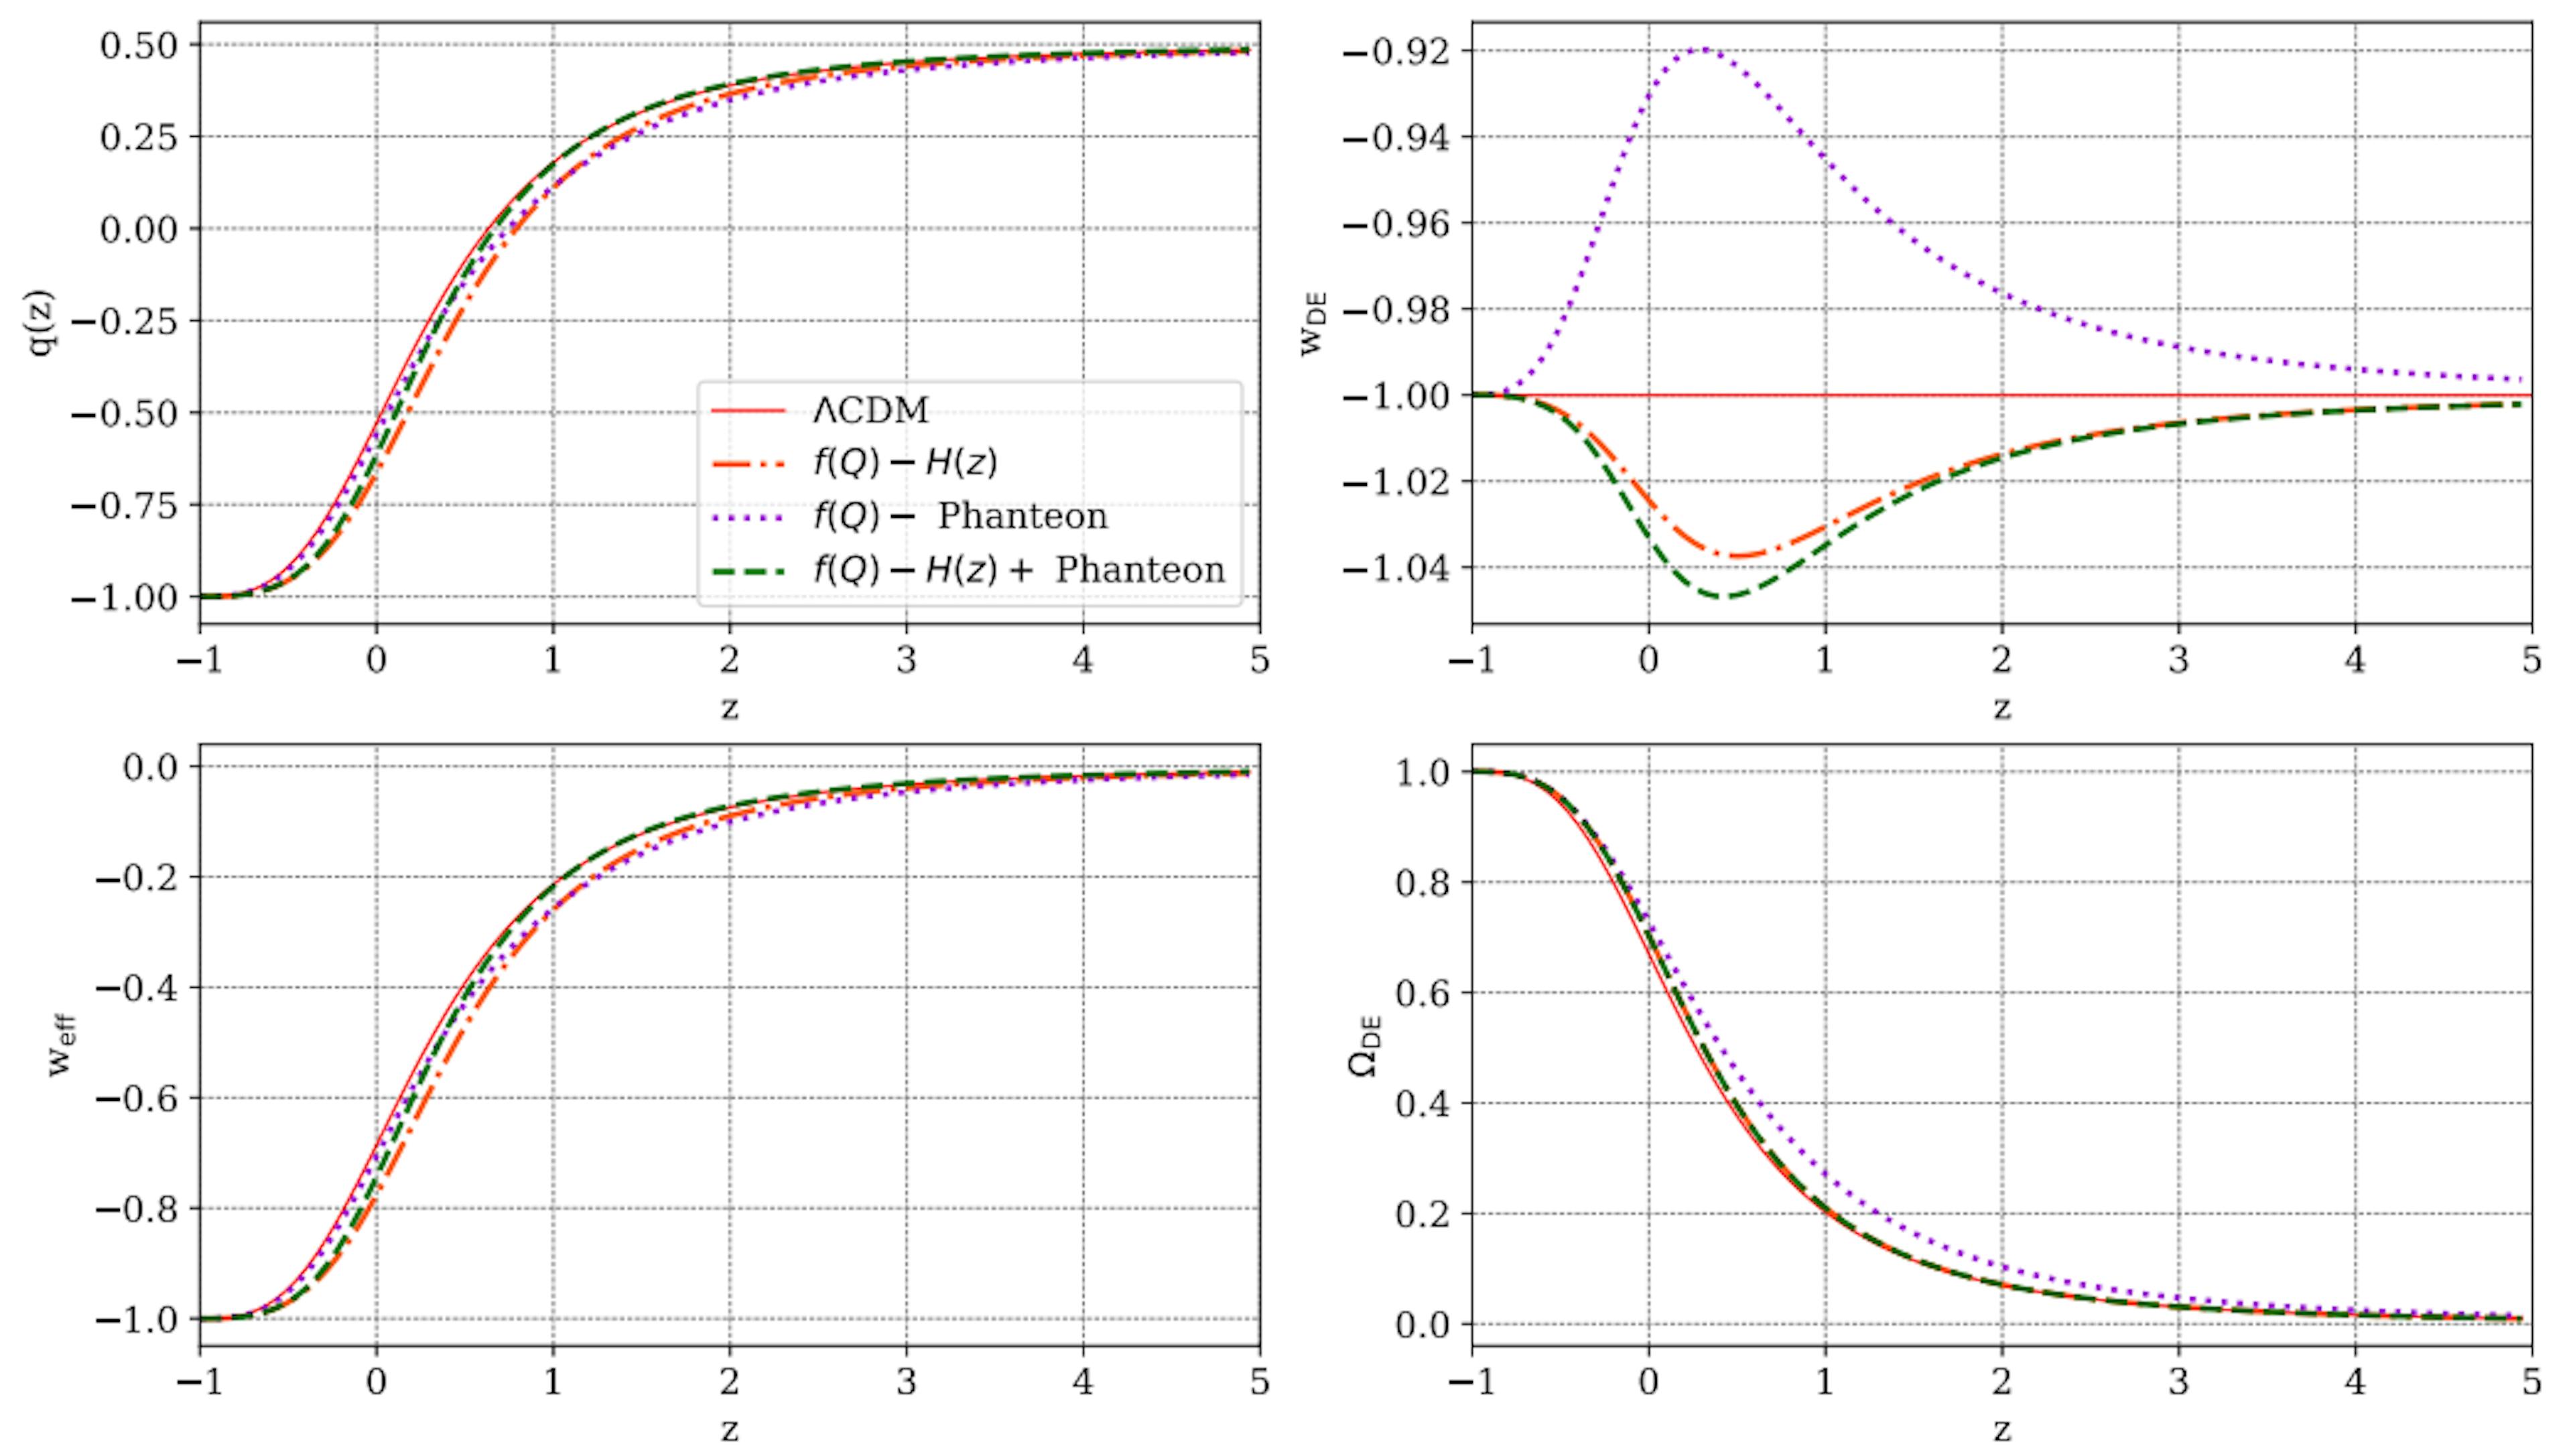 Figura 7: Evolución de algunos parámetros cosmológicos frente al corrimiento al rojo, z, como se predijo para el modelo f(Q) presentado en este trabajo, en comparación con las predicciones de ΛCDM (línea roja completa). En cada panel, las líneas de puntos de color naranja, violeta de puntos y verde de puntos son el resultado de las restricciones de parámetros de las muestras H(z), Pantheon y H(z)+ Pantheon, respectivamente.